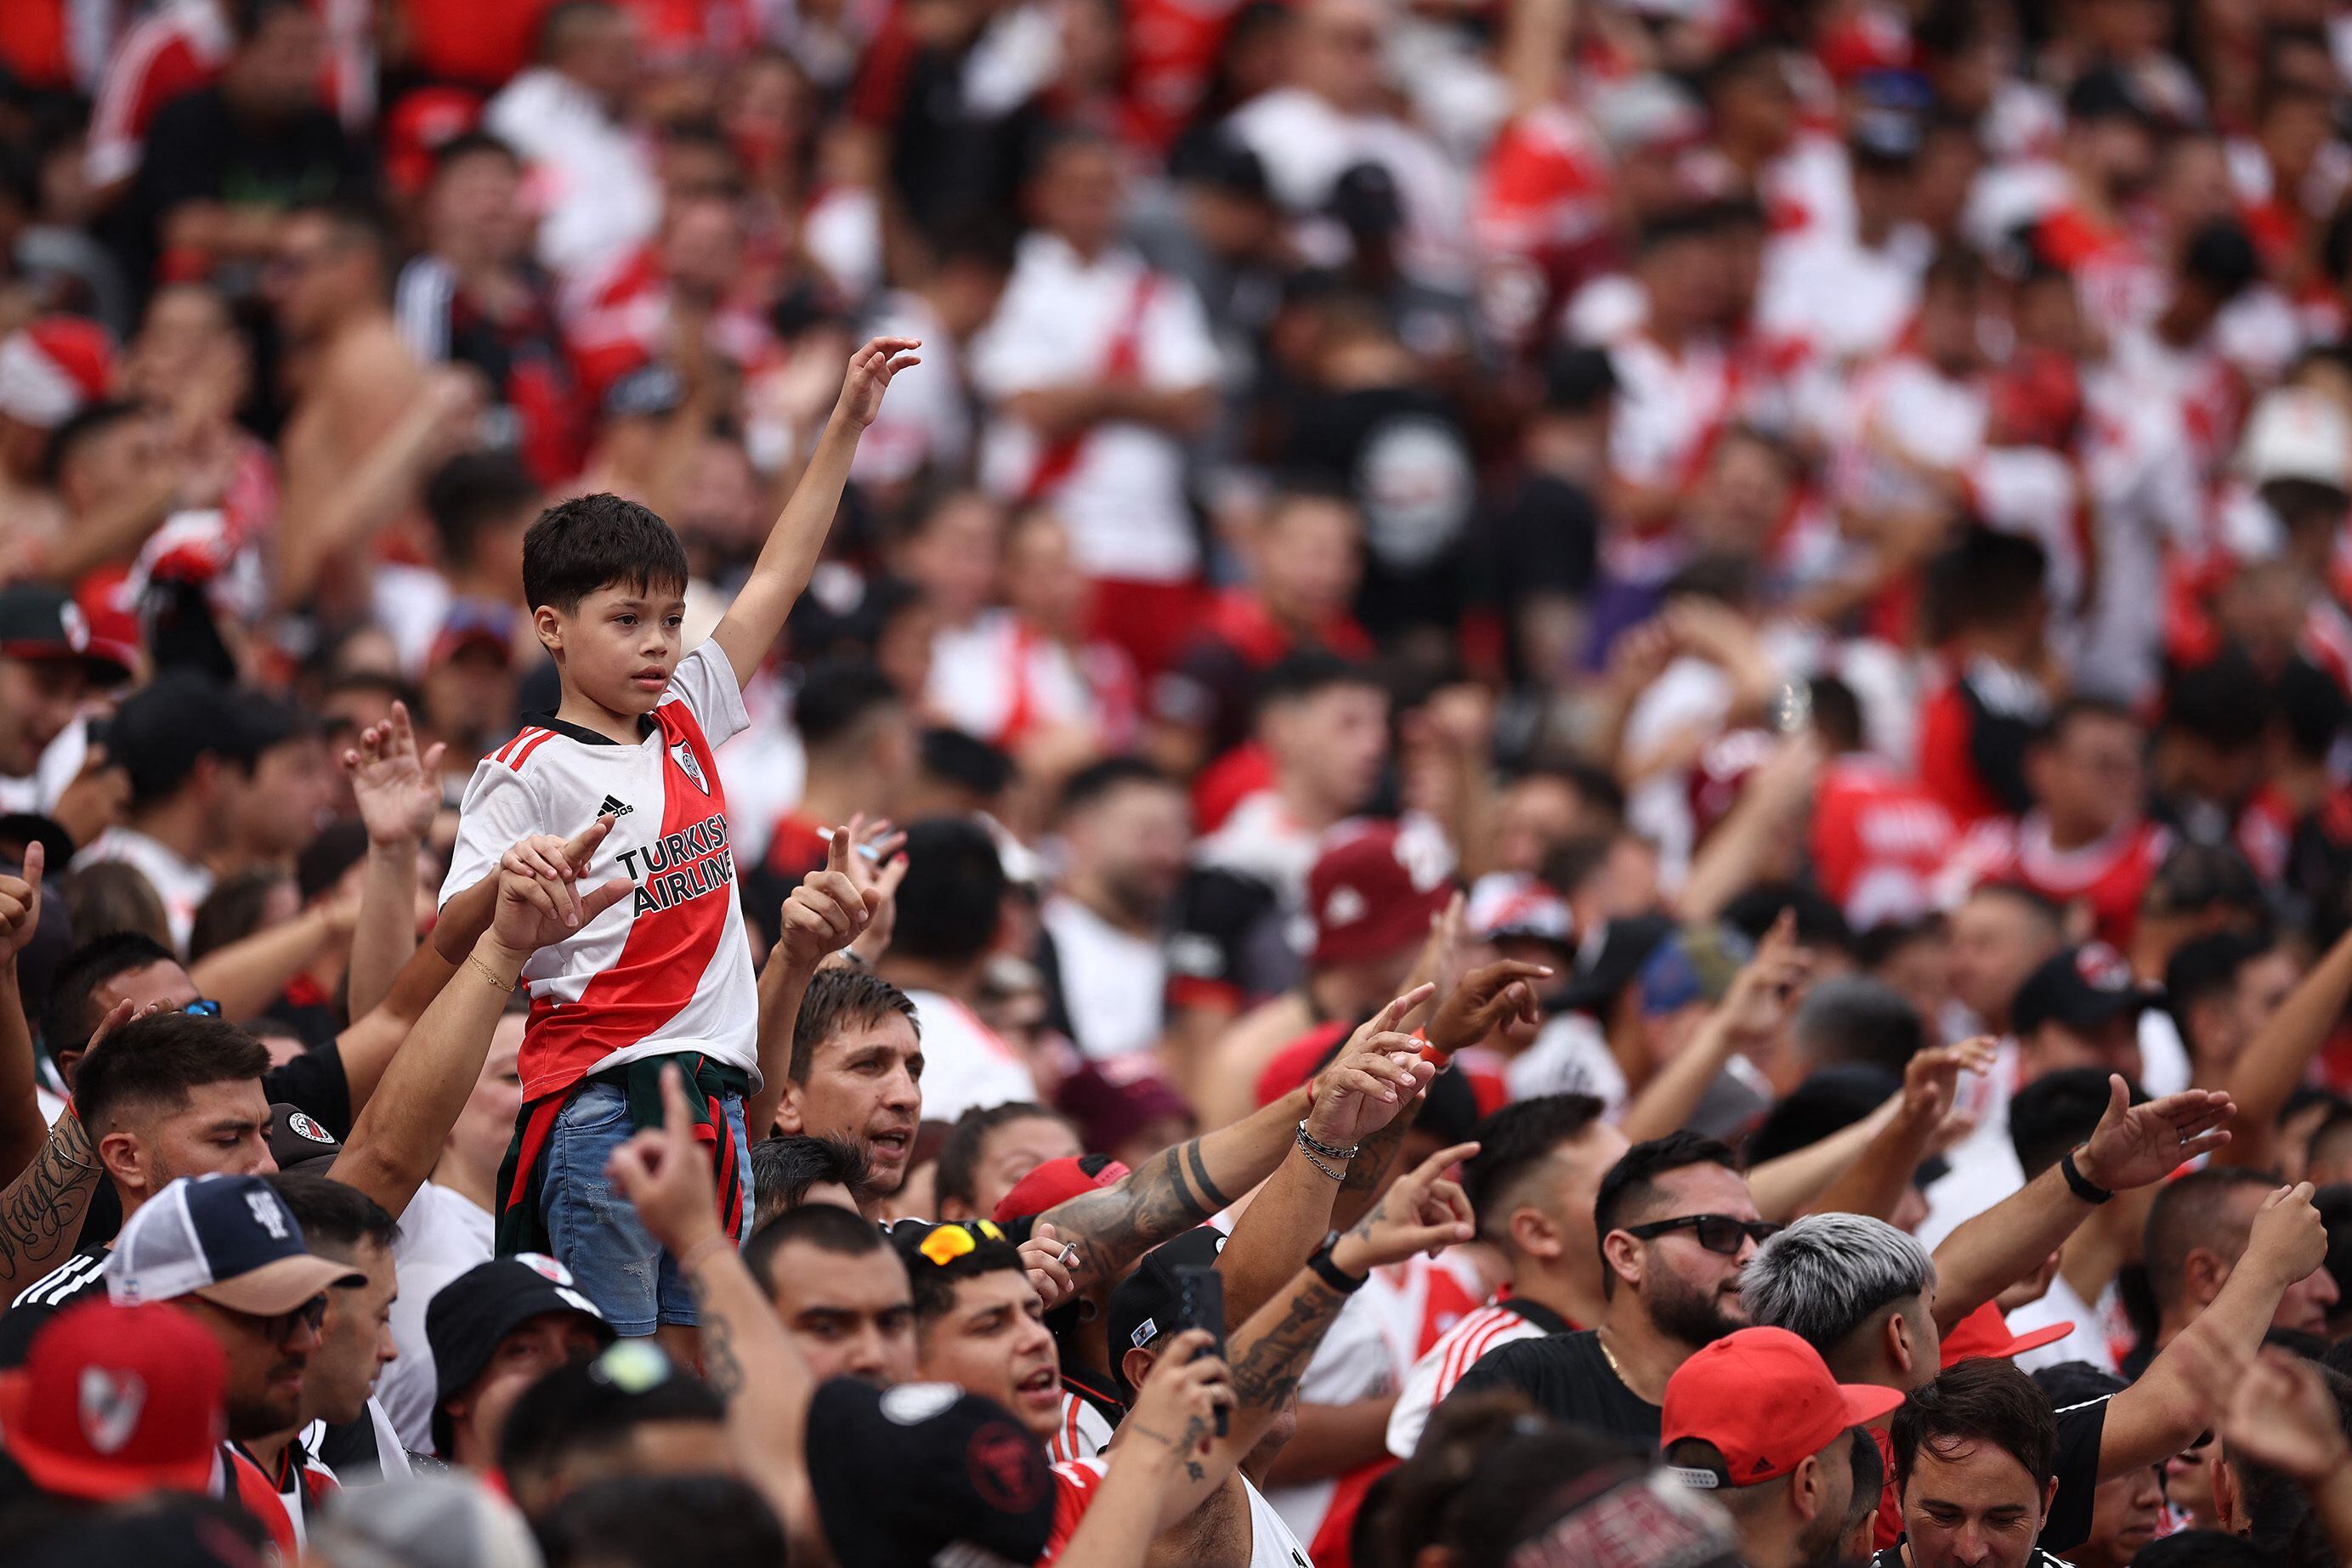 La marea roja y blanca se acomodó en los cuatro costados de estadio Monumental (Foto: Reuters)